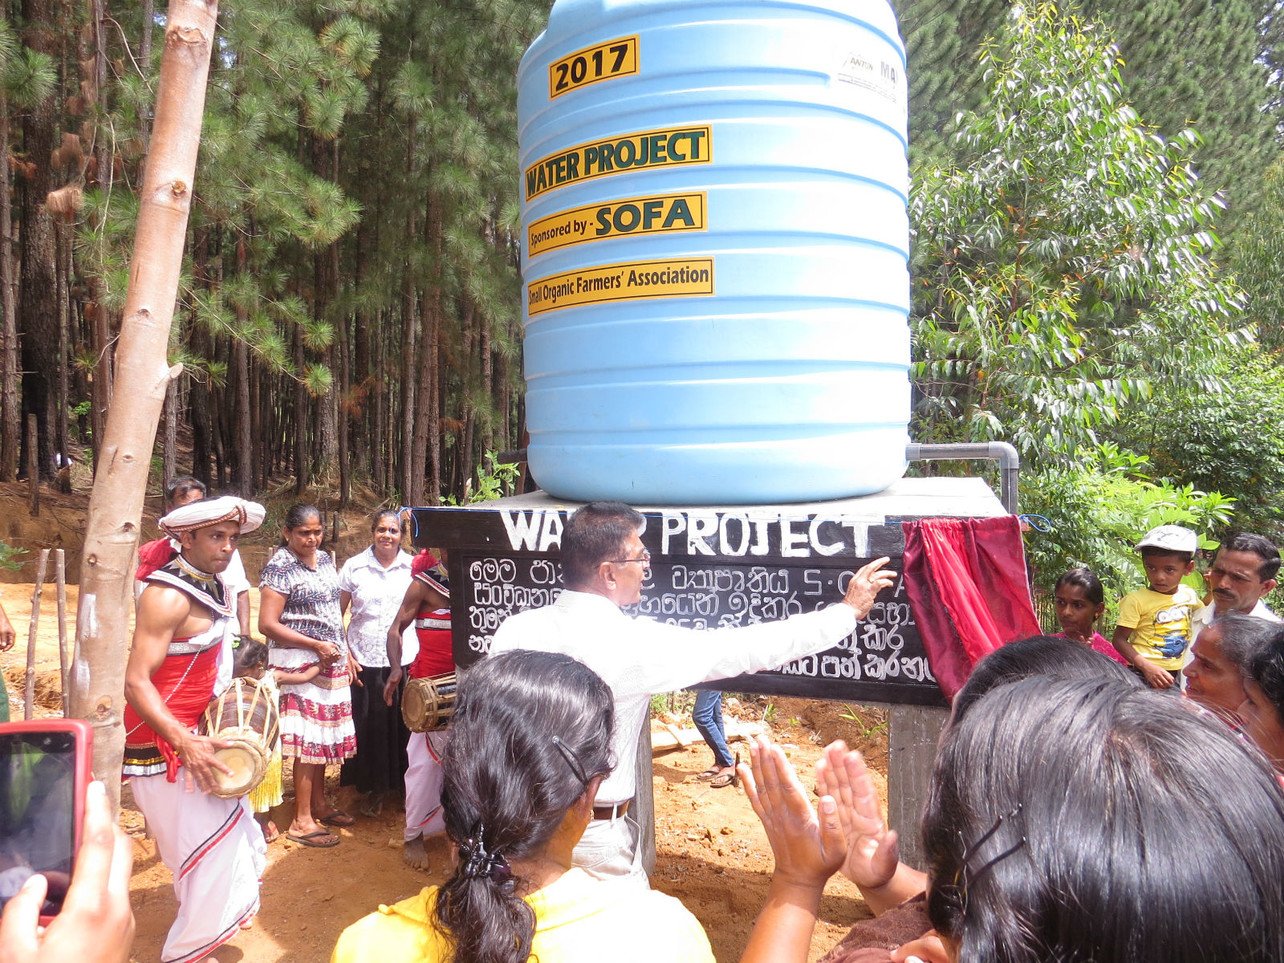 經過村民多番搓商，最後以投票方式決定水塔的安置點。SOFA 農民合作社在村內設立了一個貯水器，改善小農戶的生活，村民對此興奮不已。 圖：SOFA